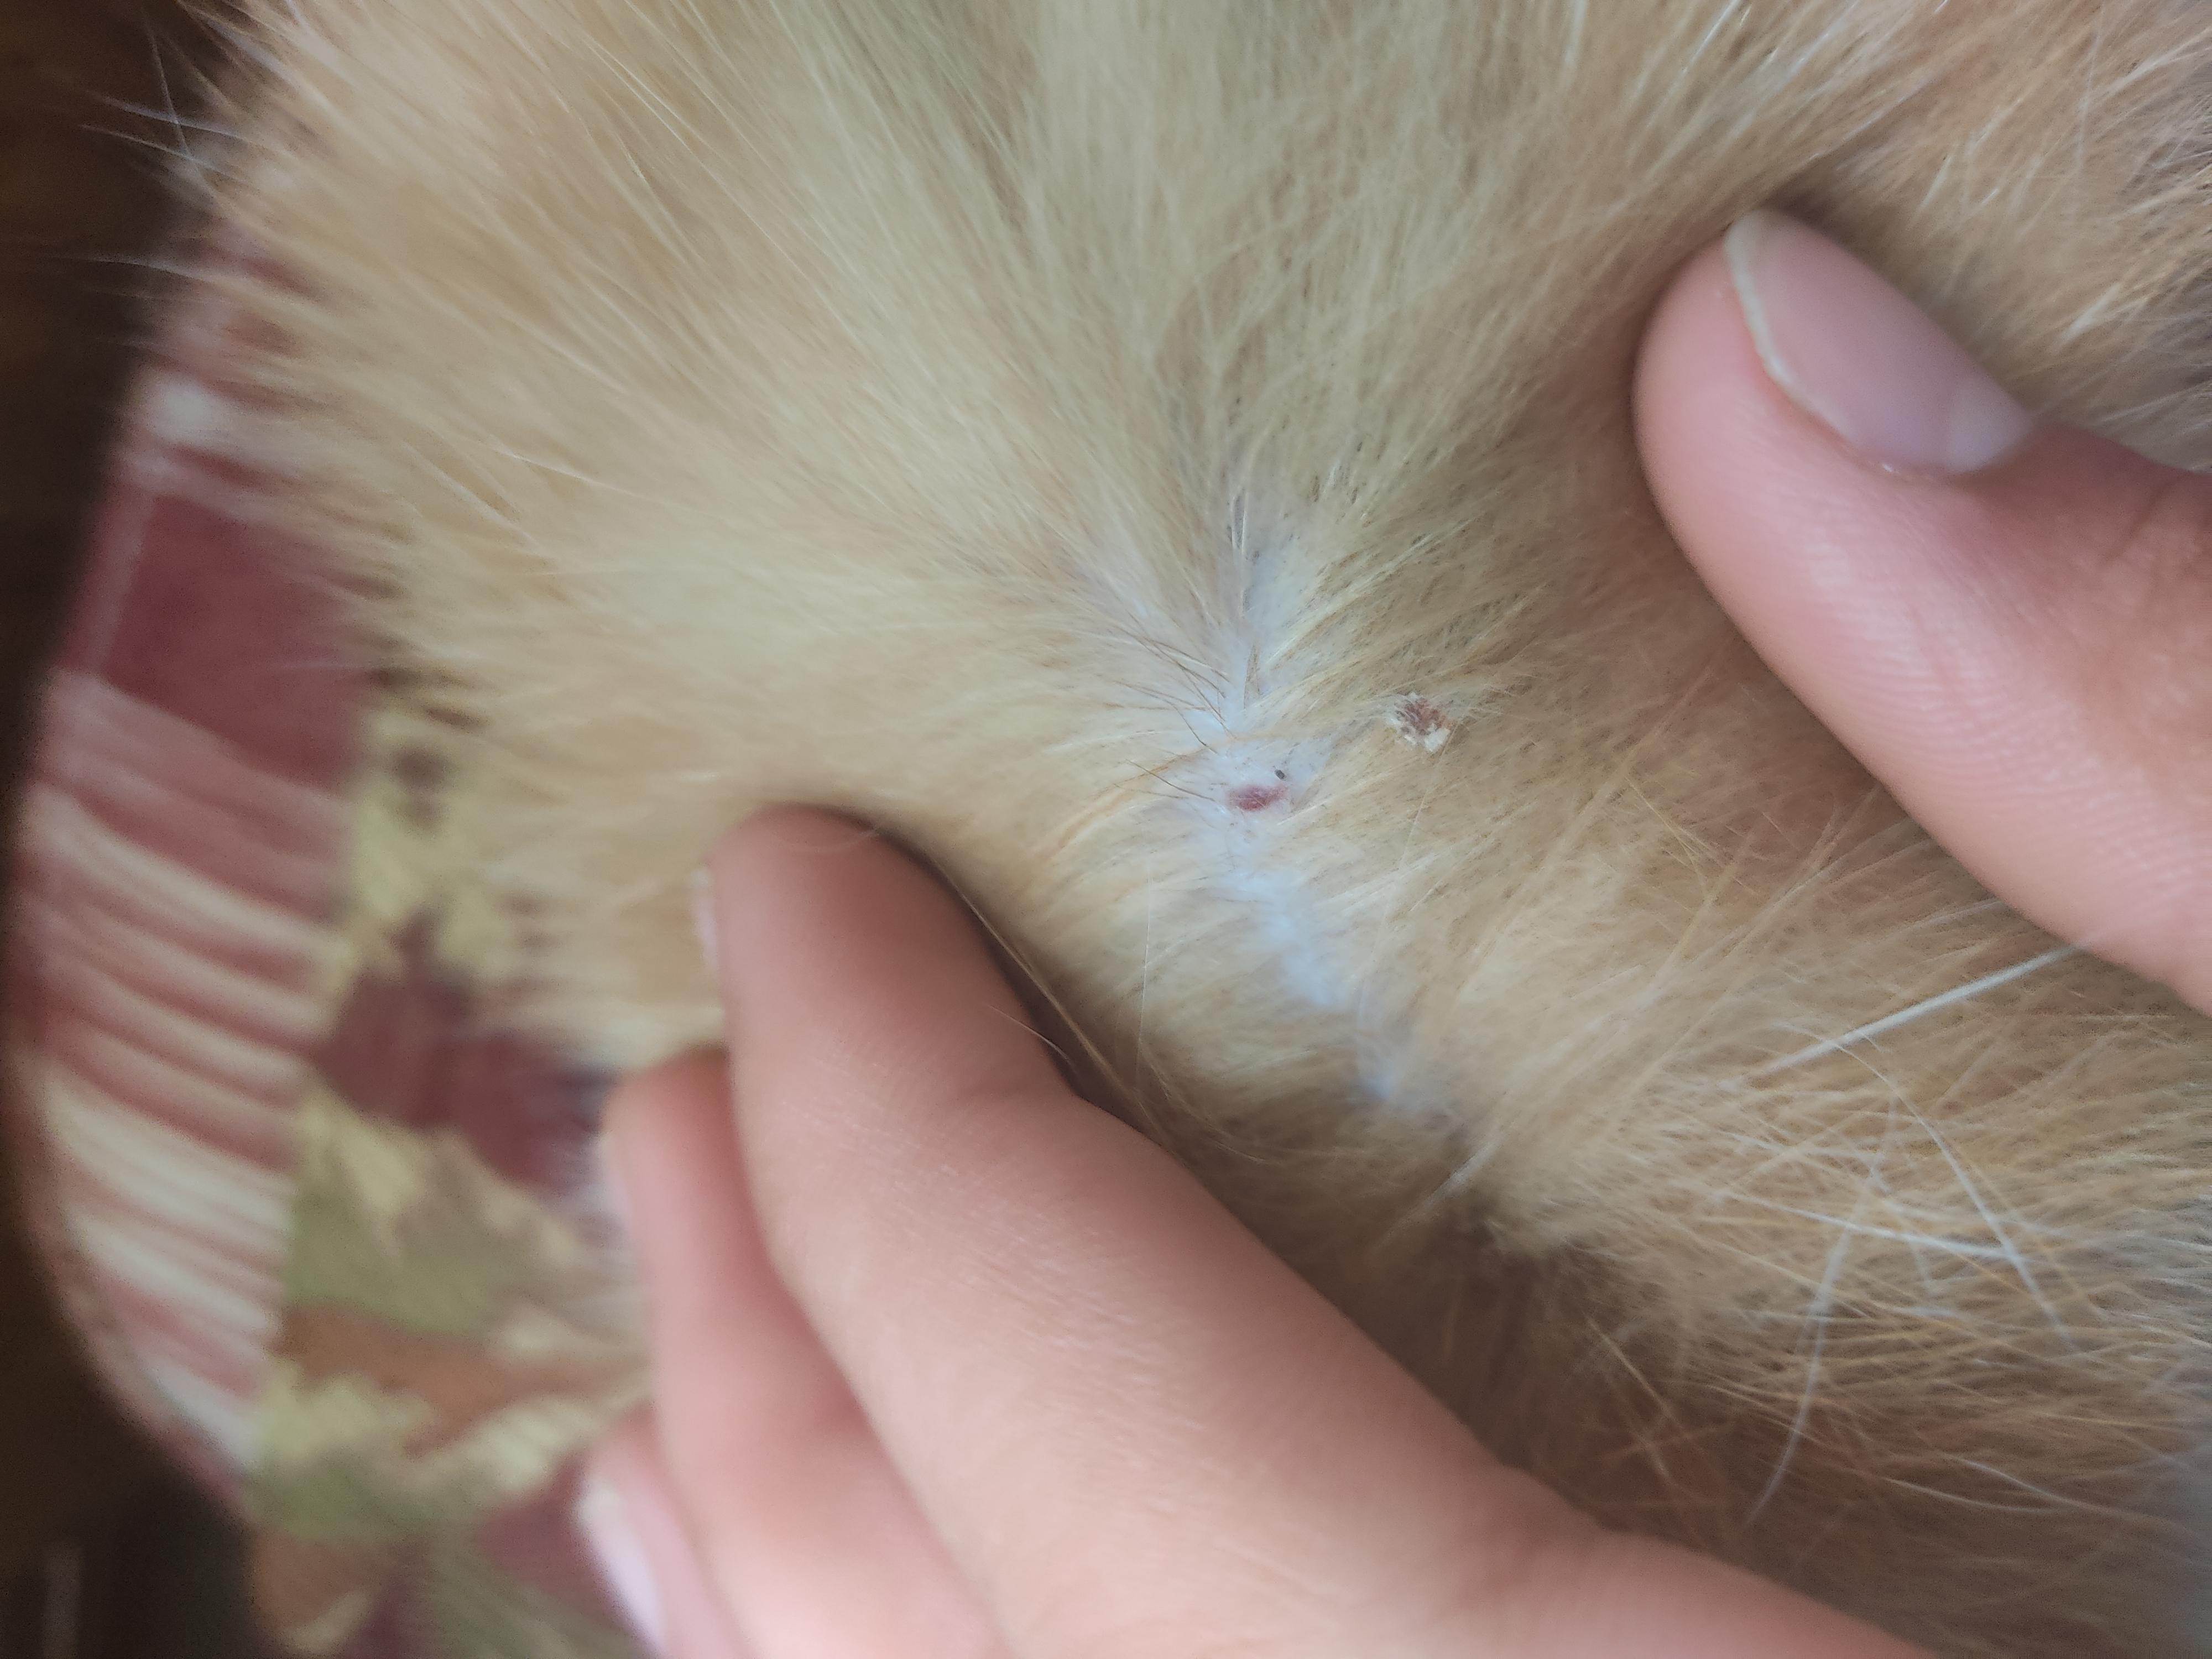 Шишка на шее у кота: под кожей шарик, опухоль